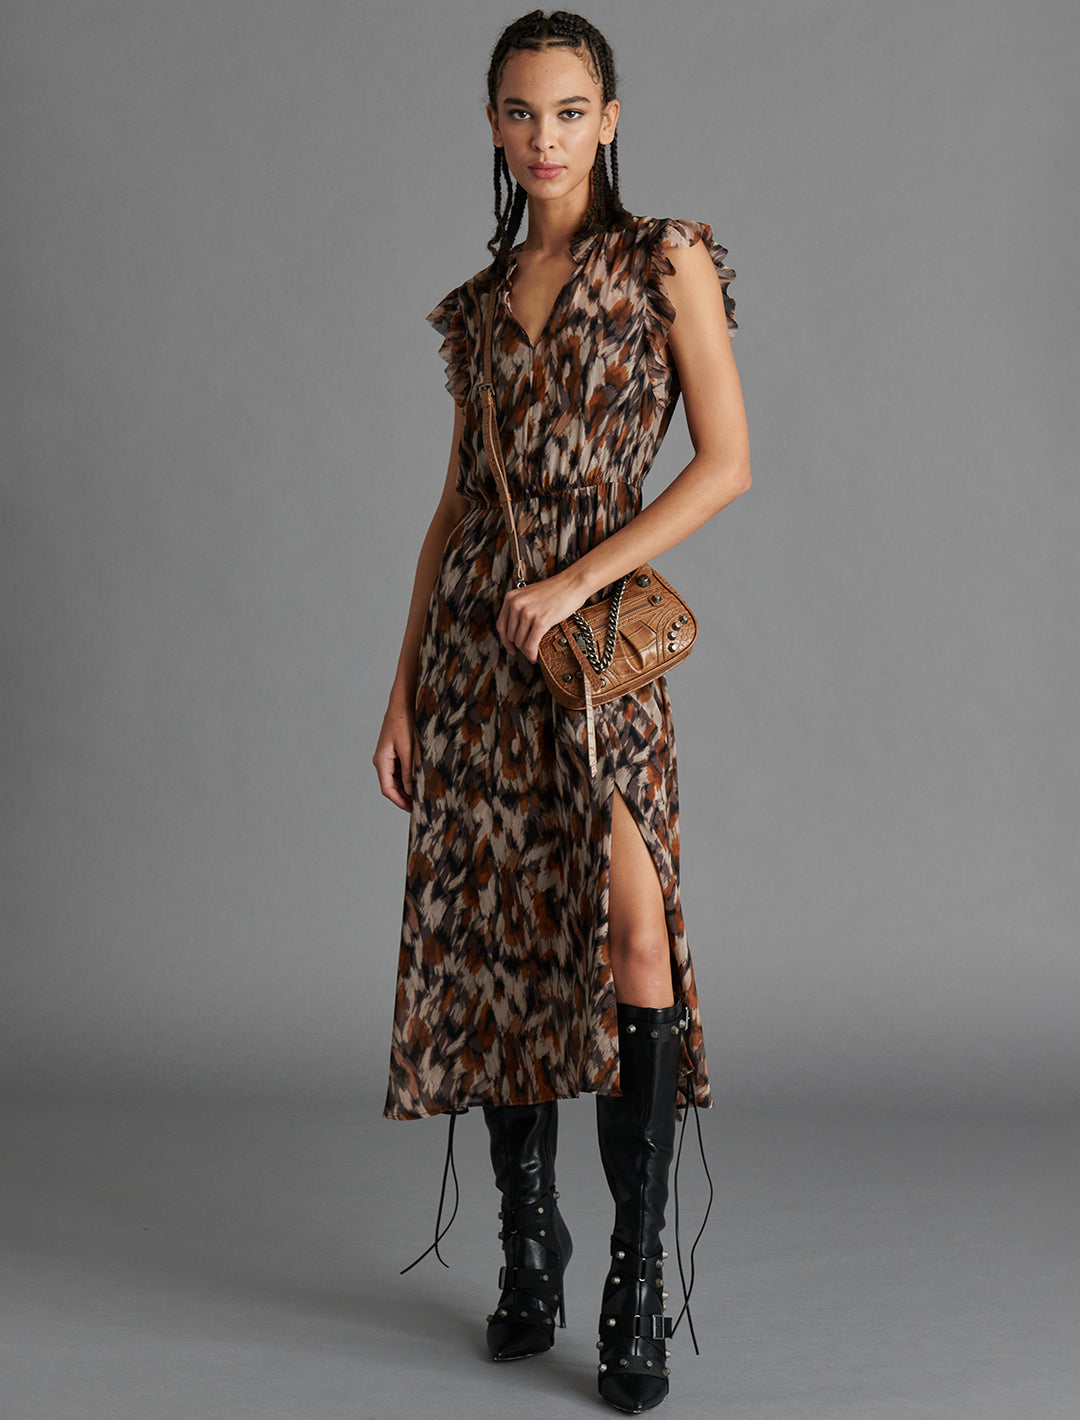 Model wearing Steve Madden's allegra dress in oak bluff.